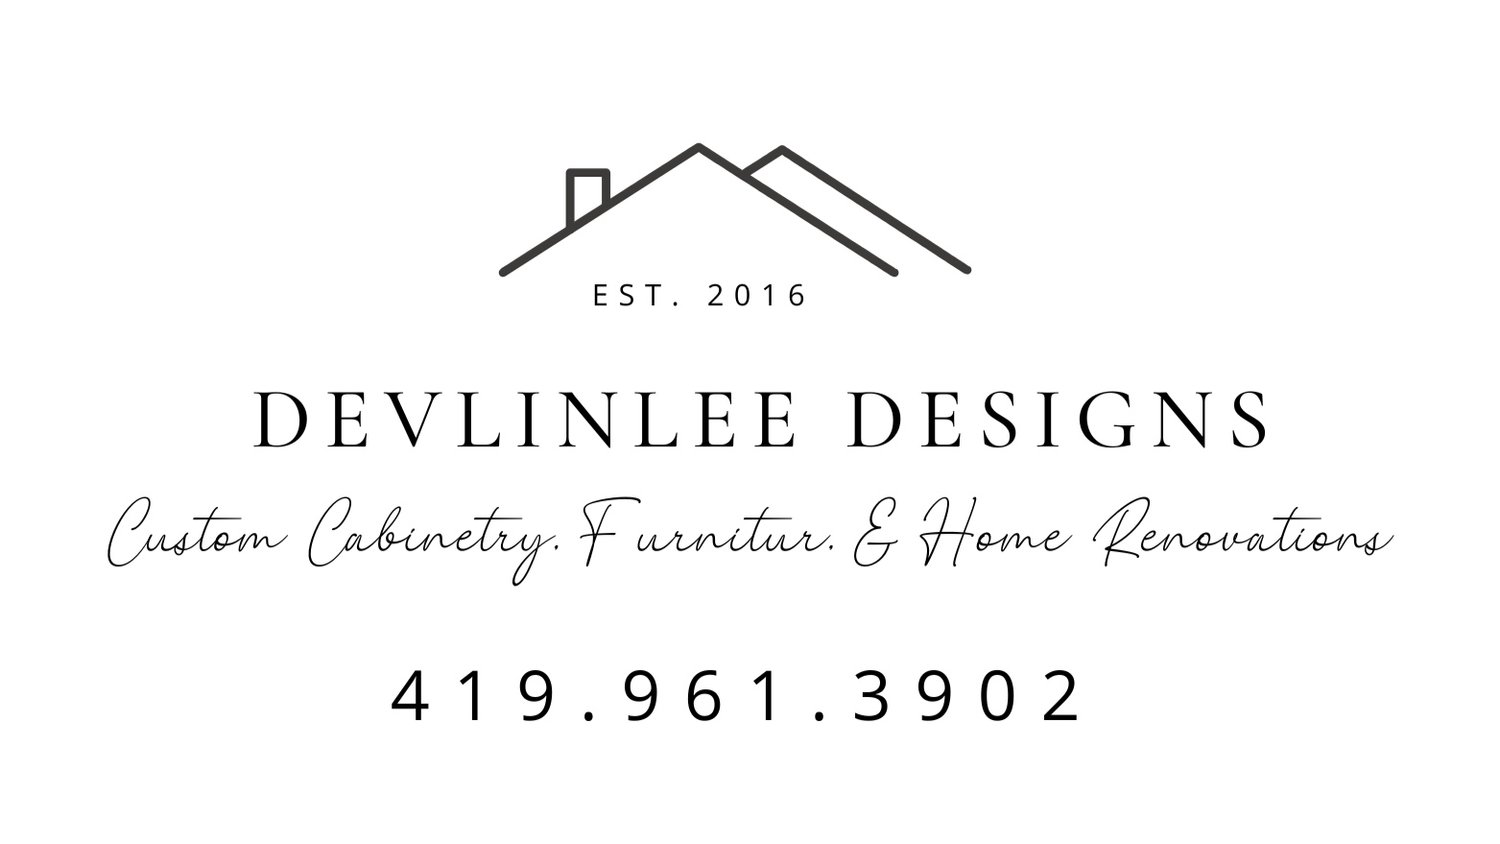 DevlinLee Designs